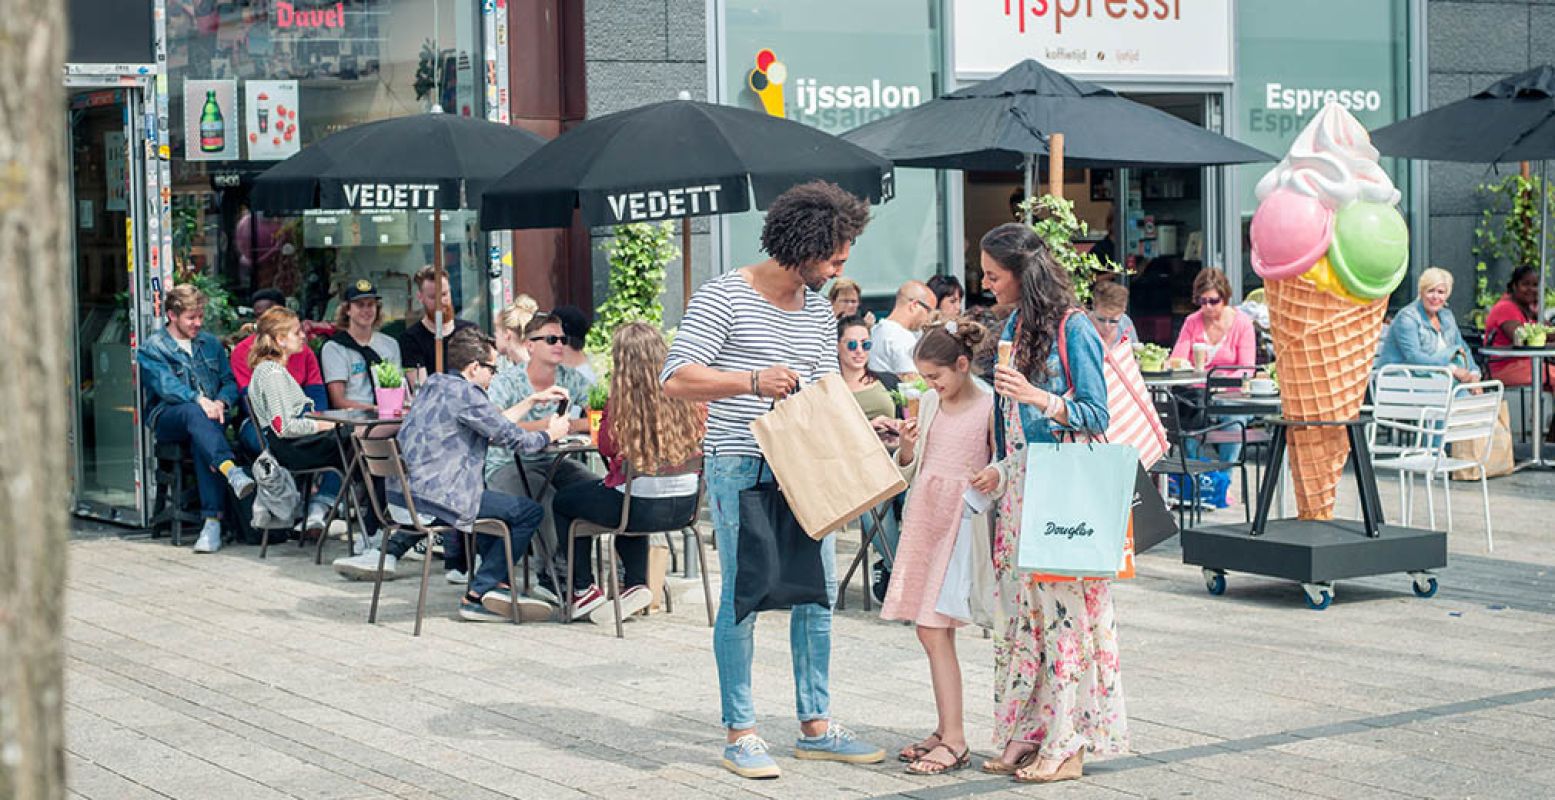 Met het hele gezin shoppen in Almere en genieten van een zomerse dag in de stad. Foto: Almere City Marketing.